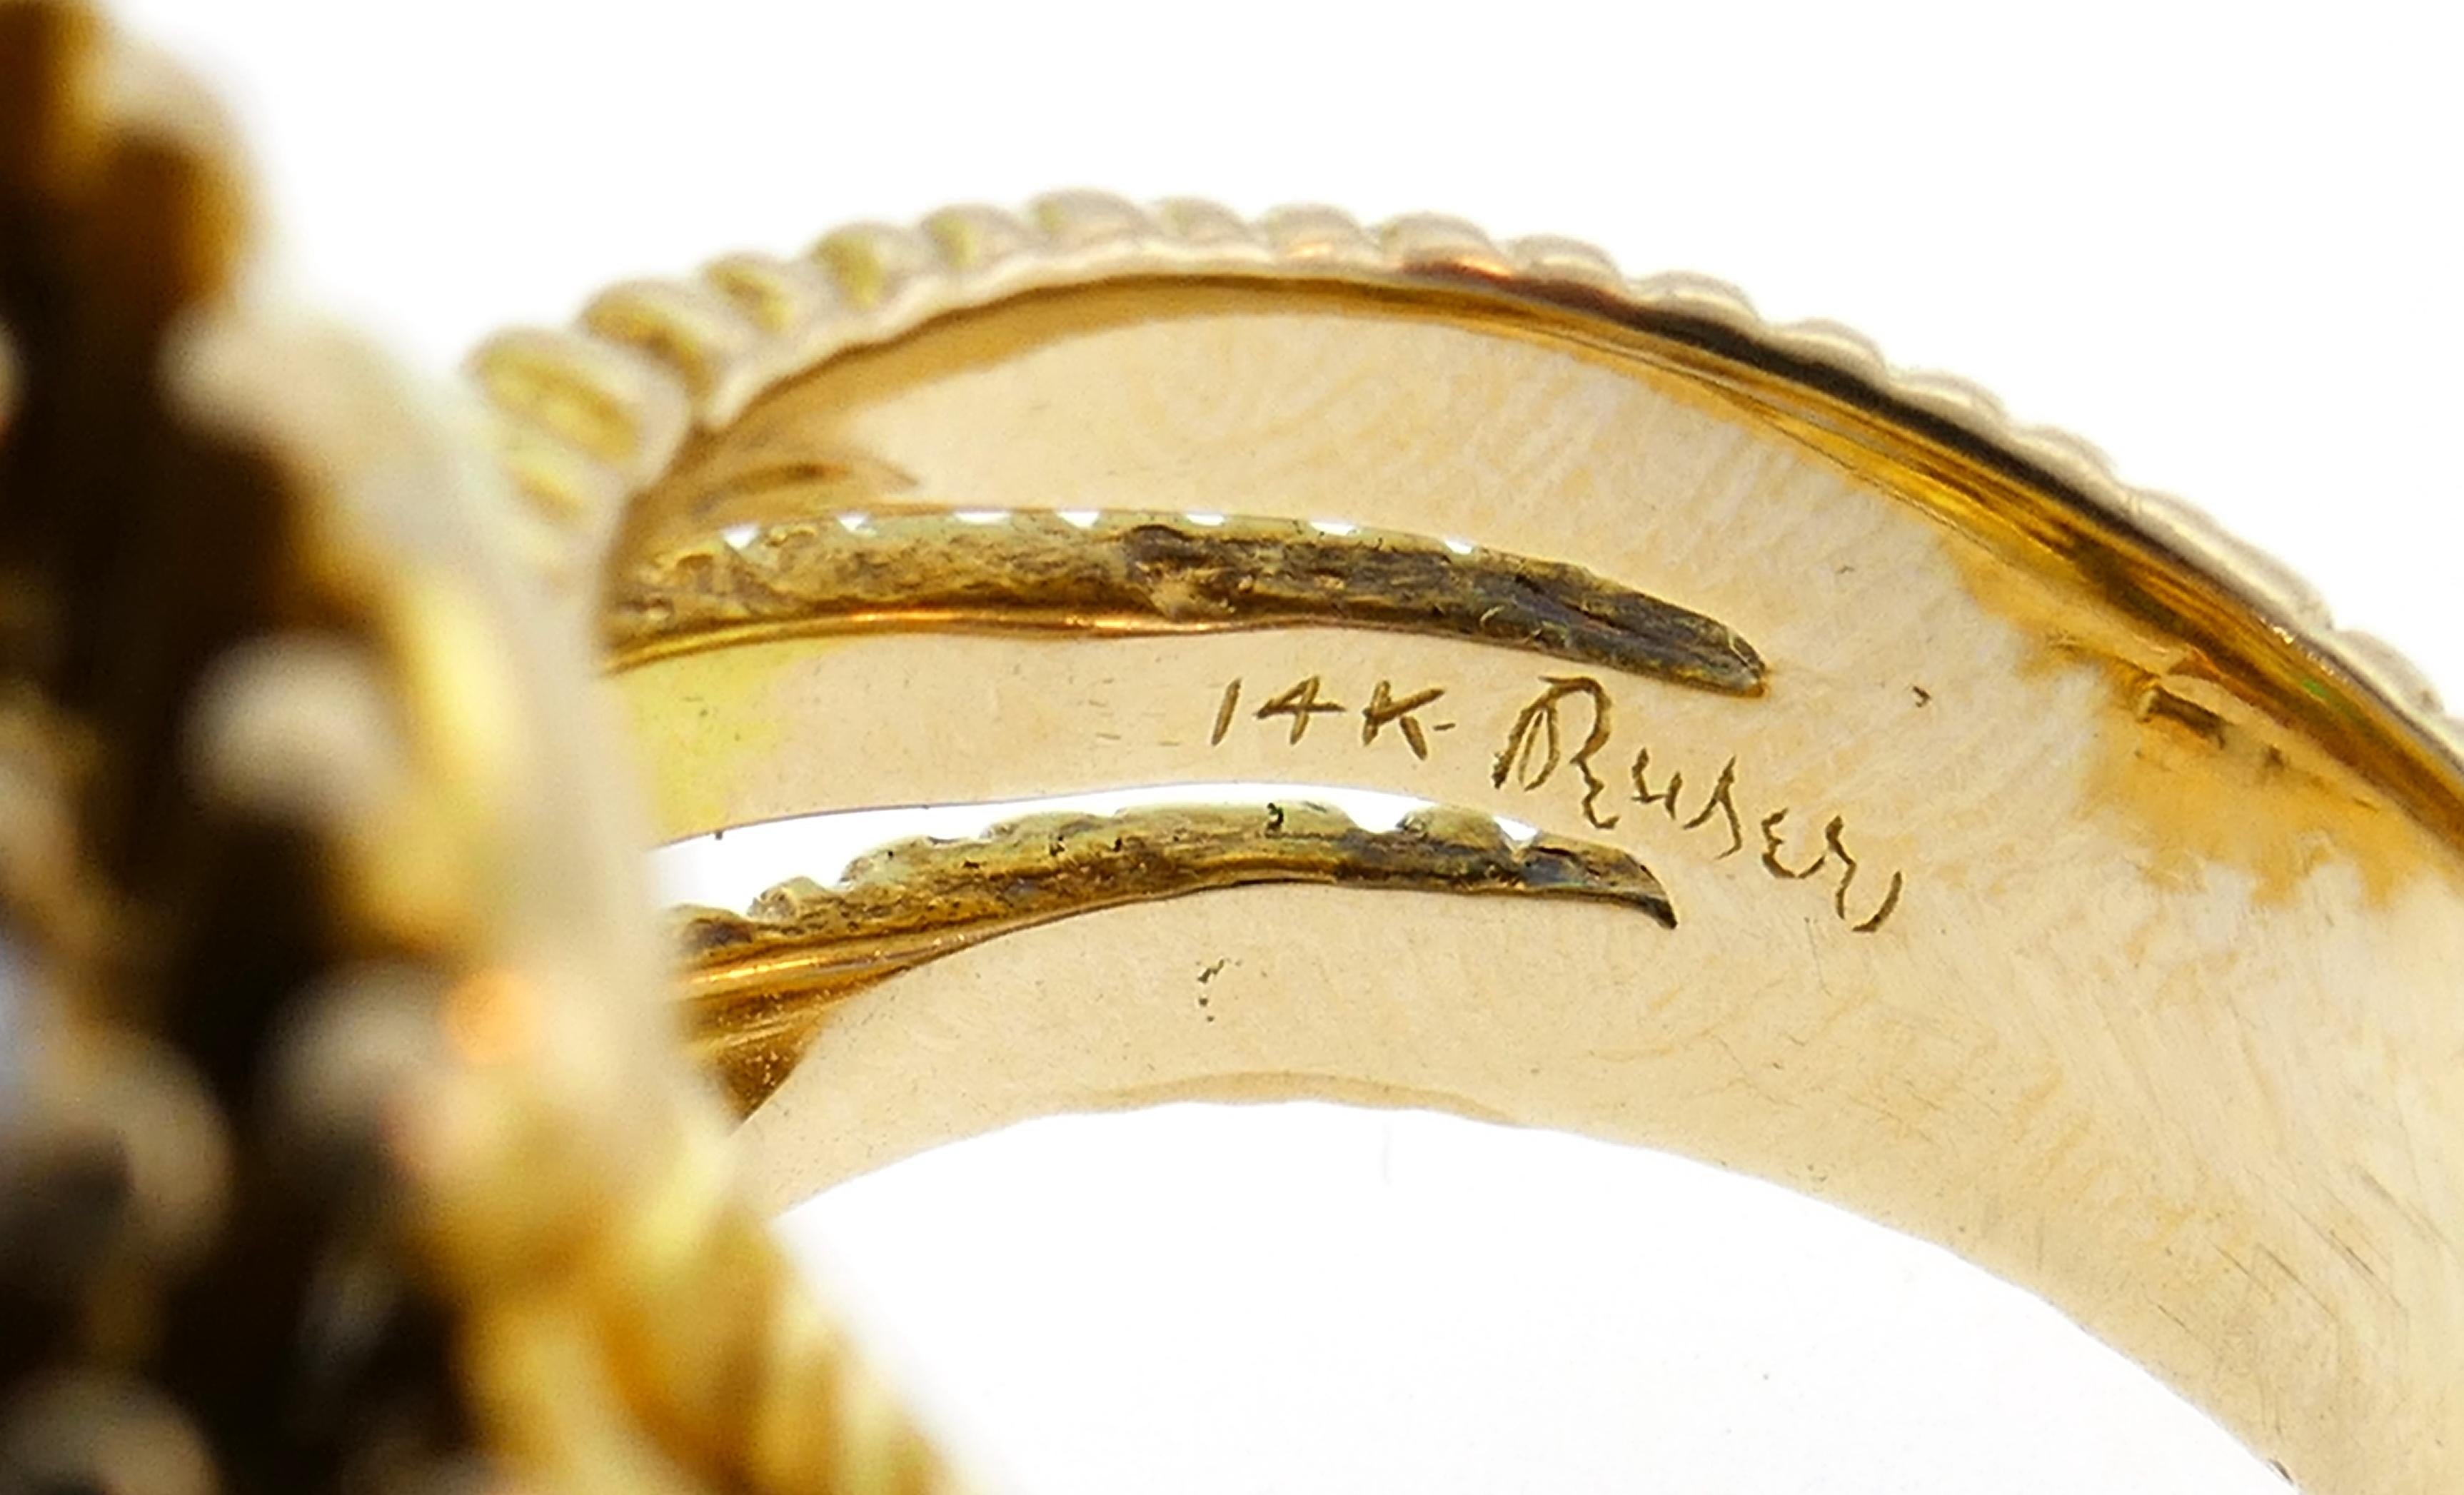 Ruser Emerald Diamond Yellow Gold Ring 1960s 5